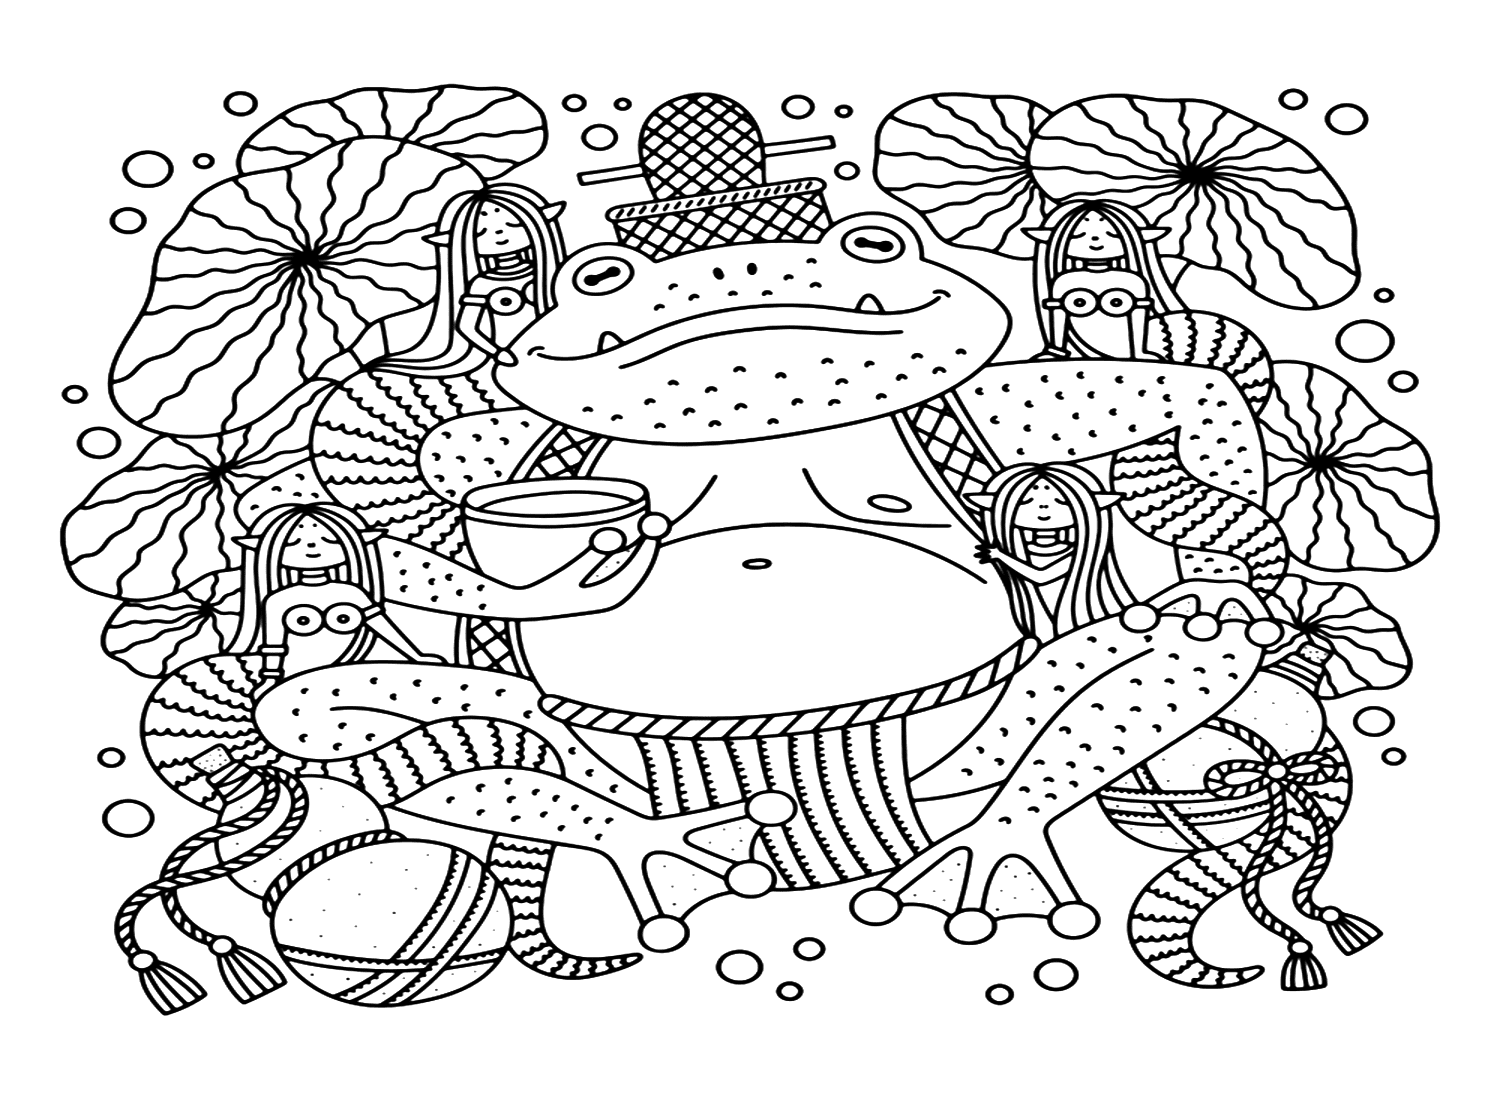 Druckbare Aga-Kröte-Malseite von Cane-Toad